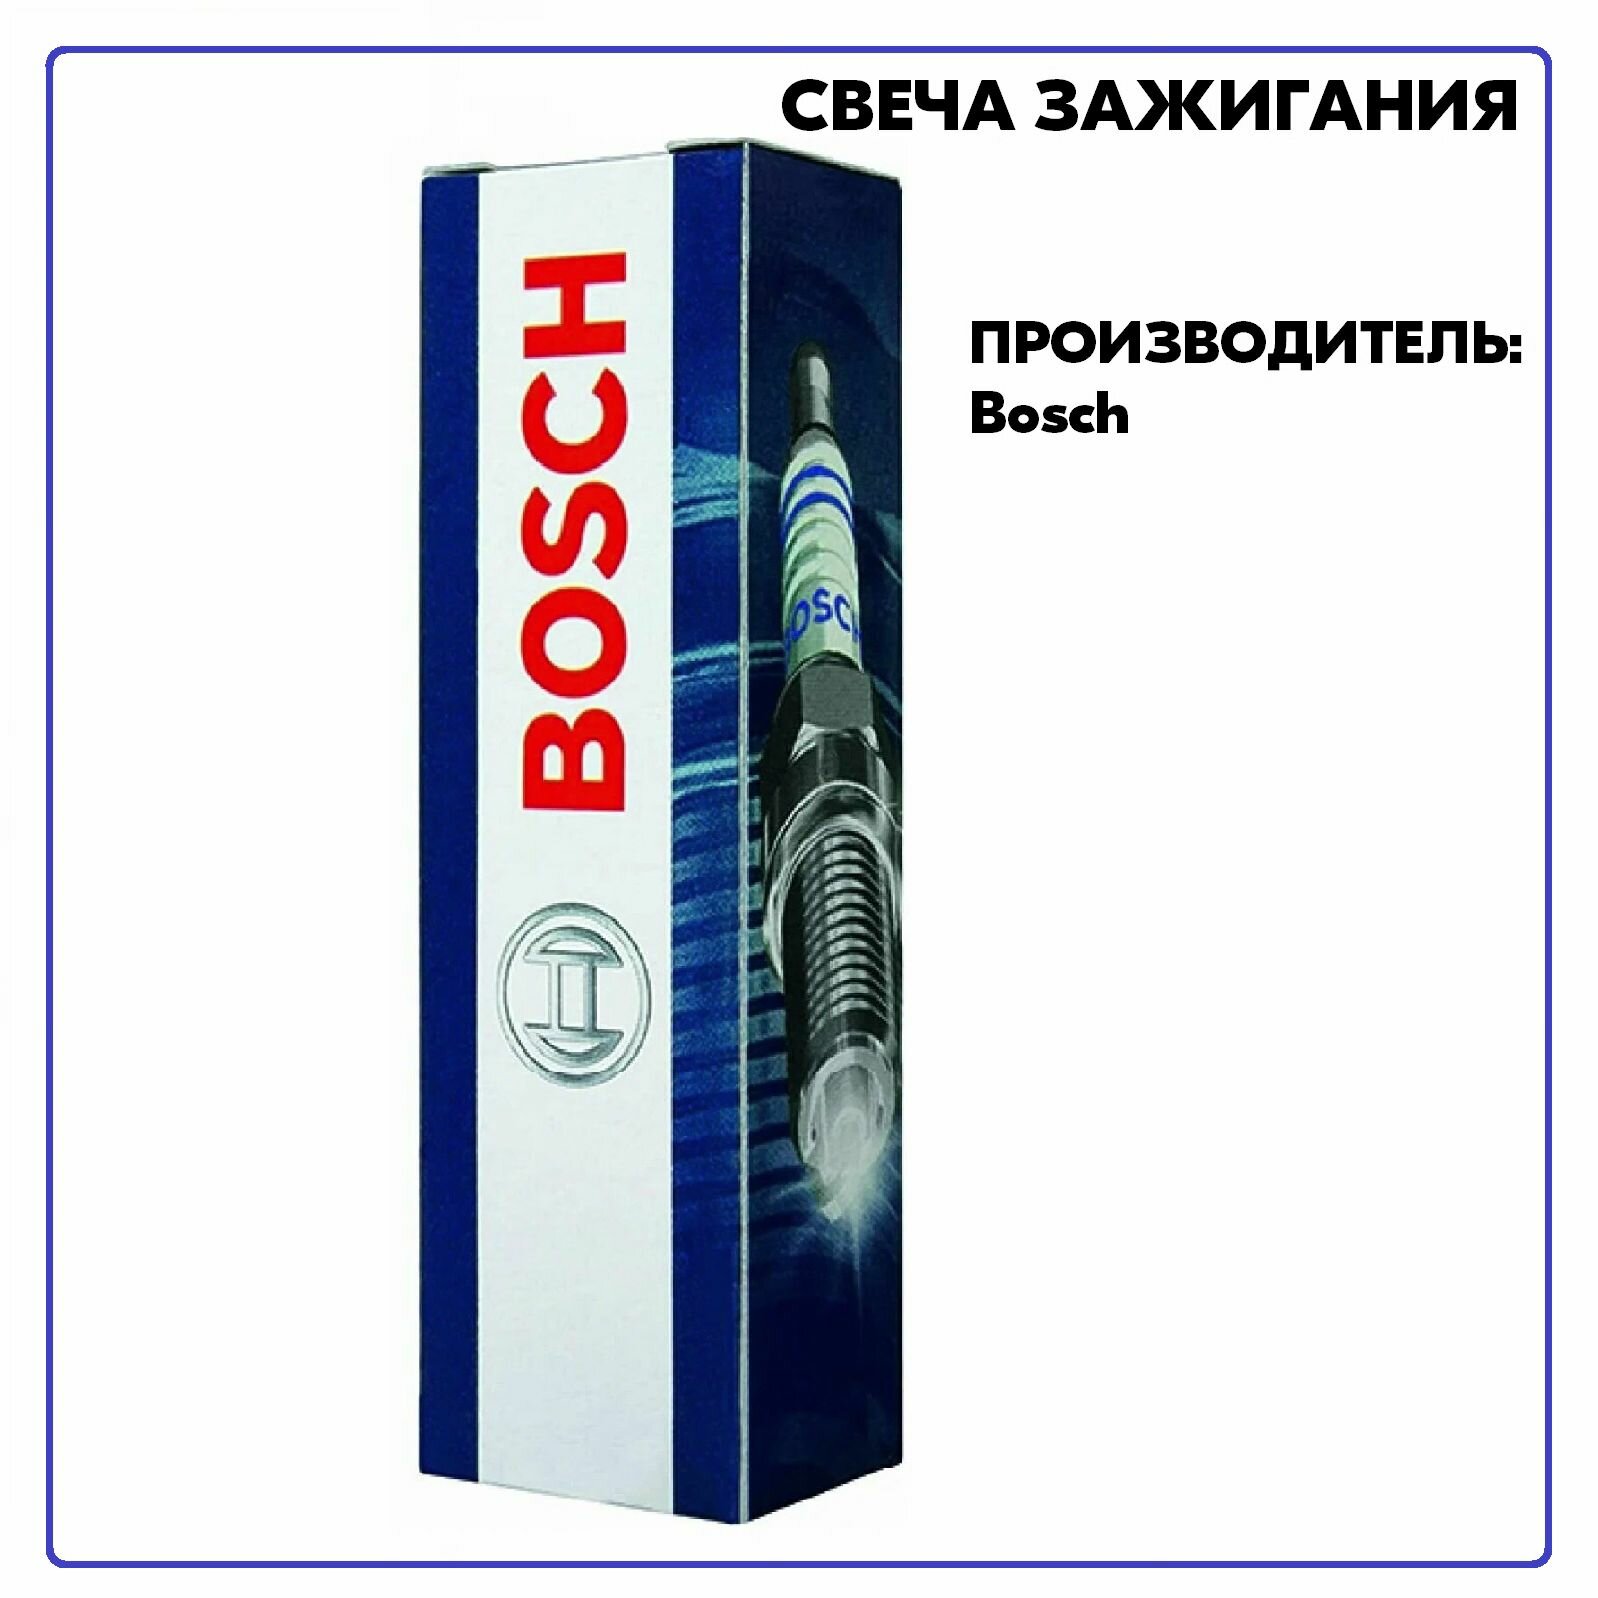 Свеча 242236542, производитель Bosch